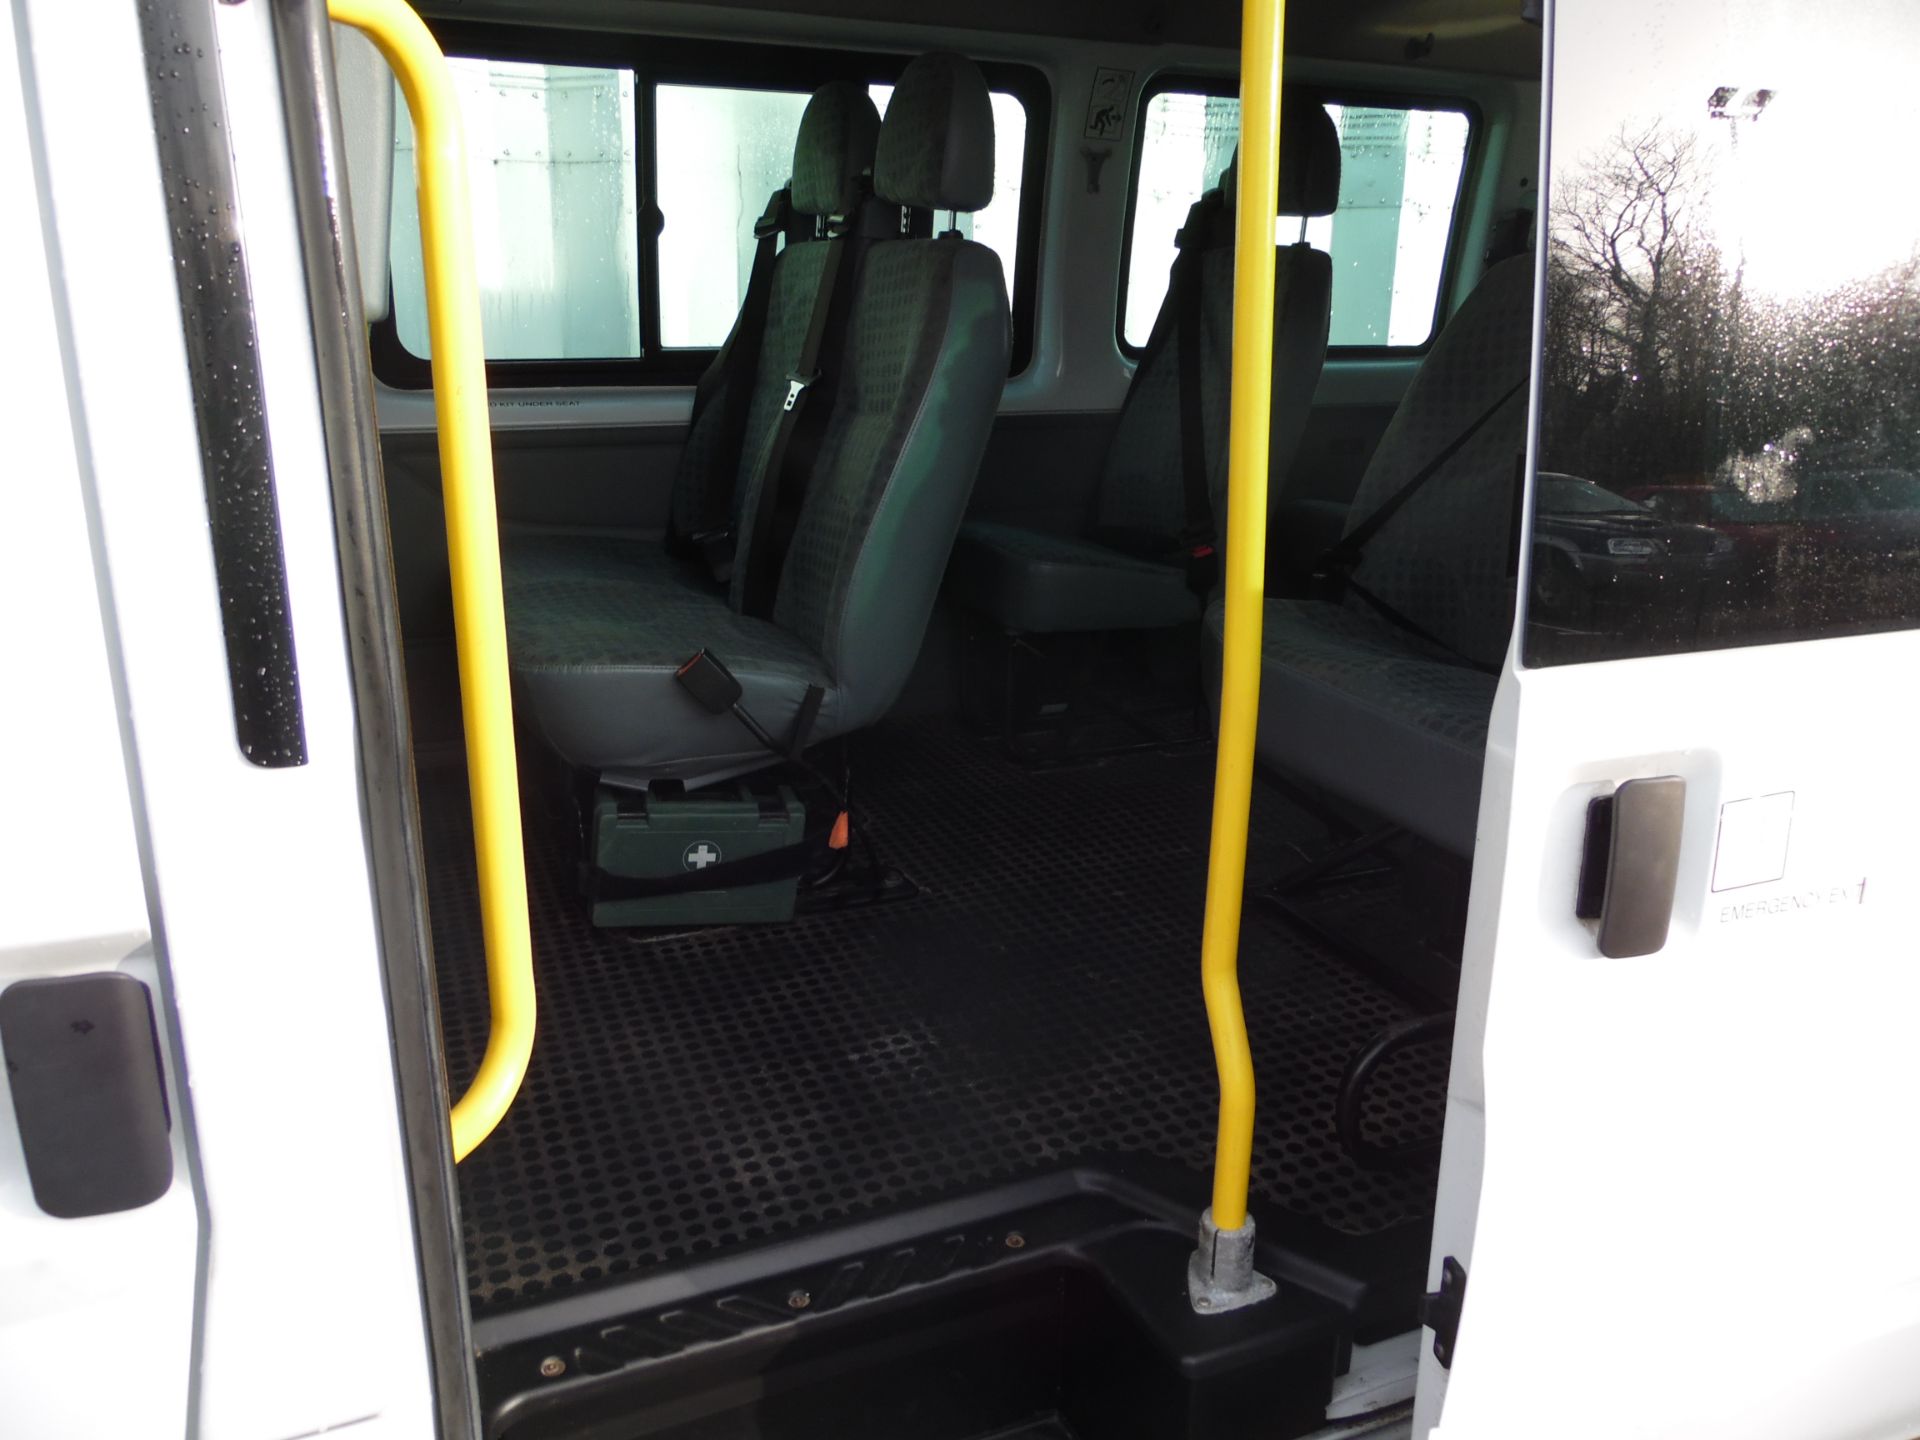 2012 FORD TRANSIT T430/135 17 SEAT MINIBUS - Image 7 of 12